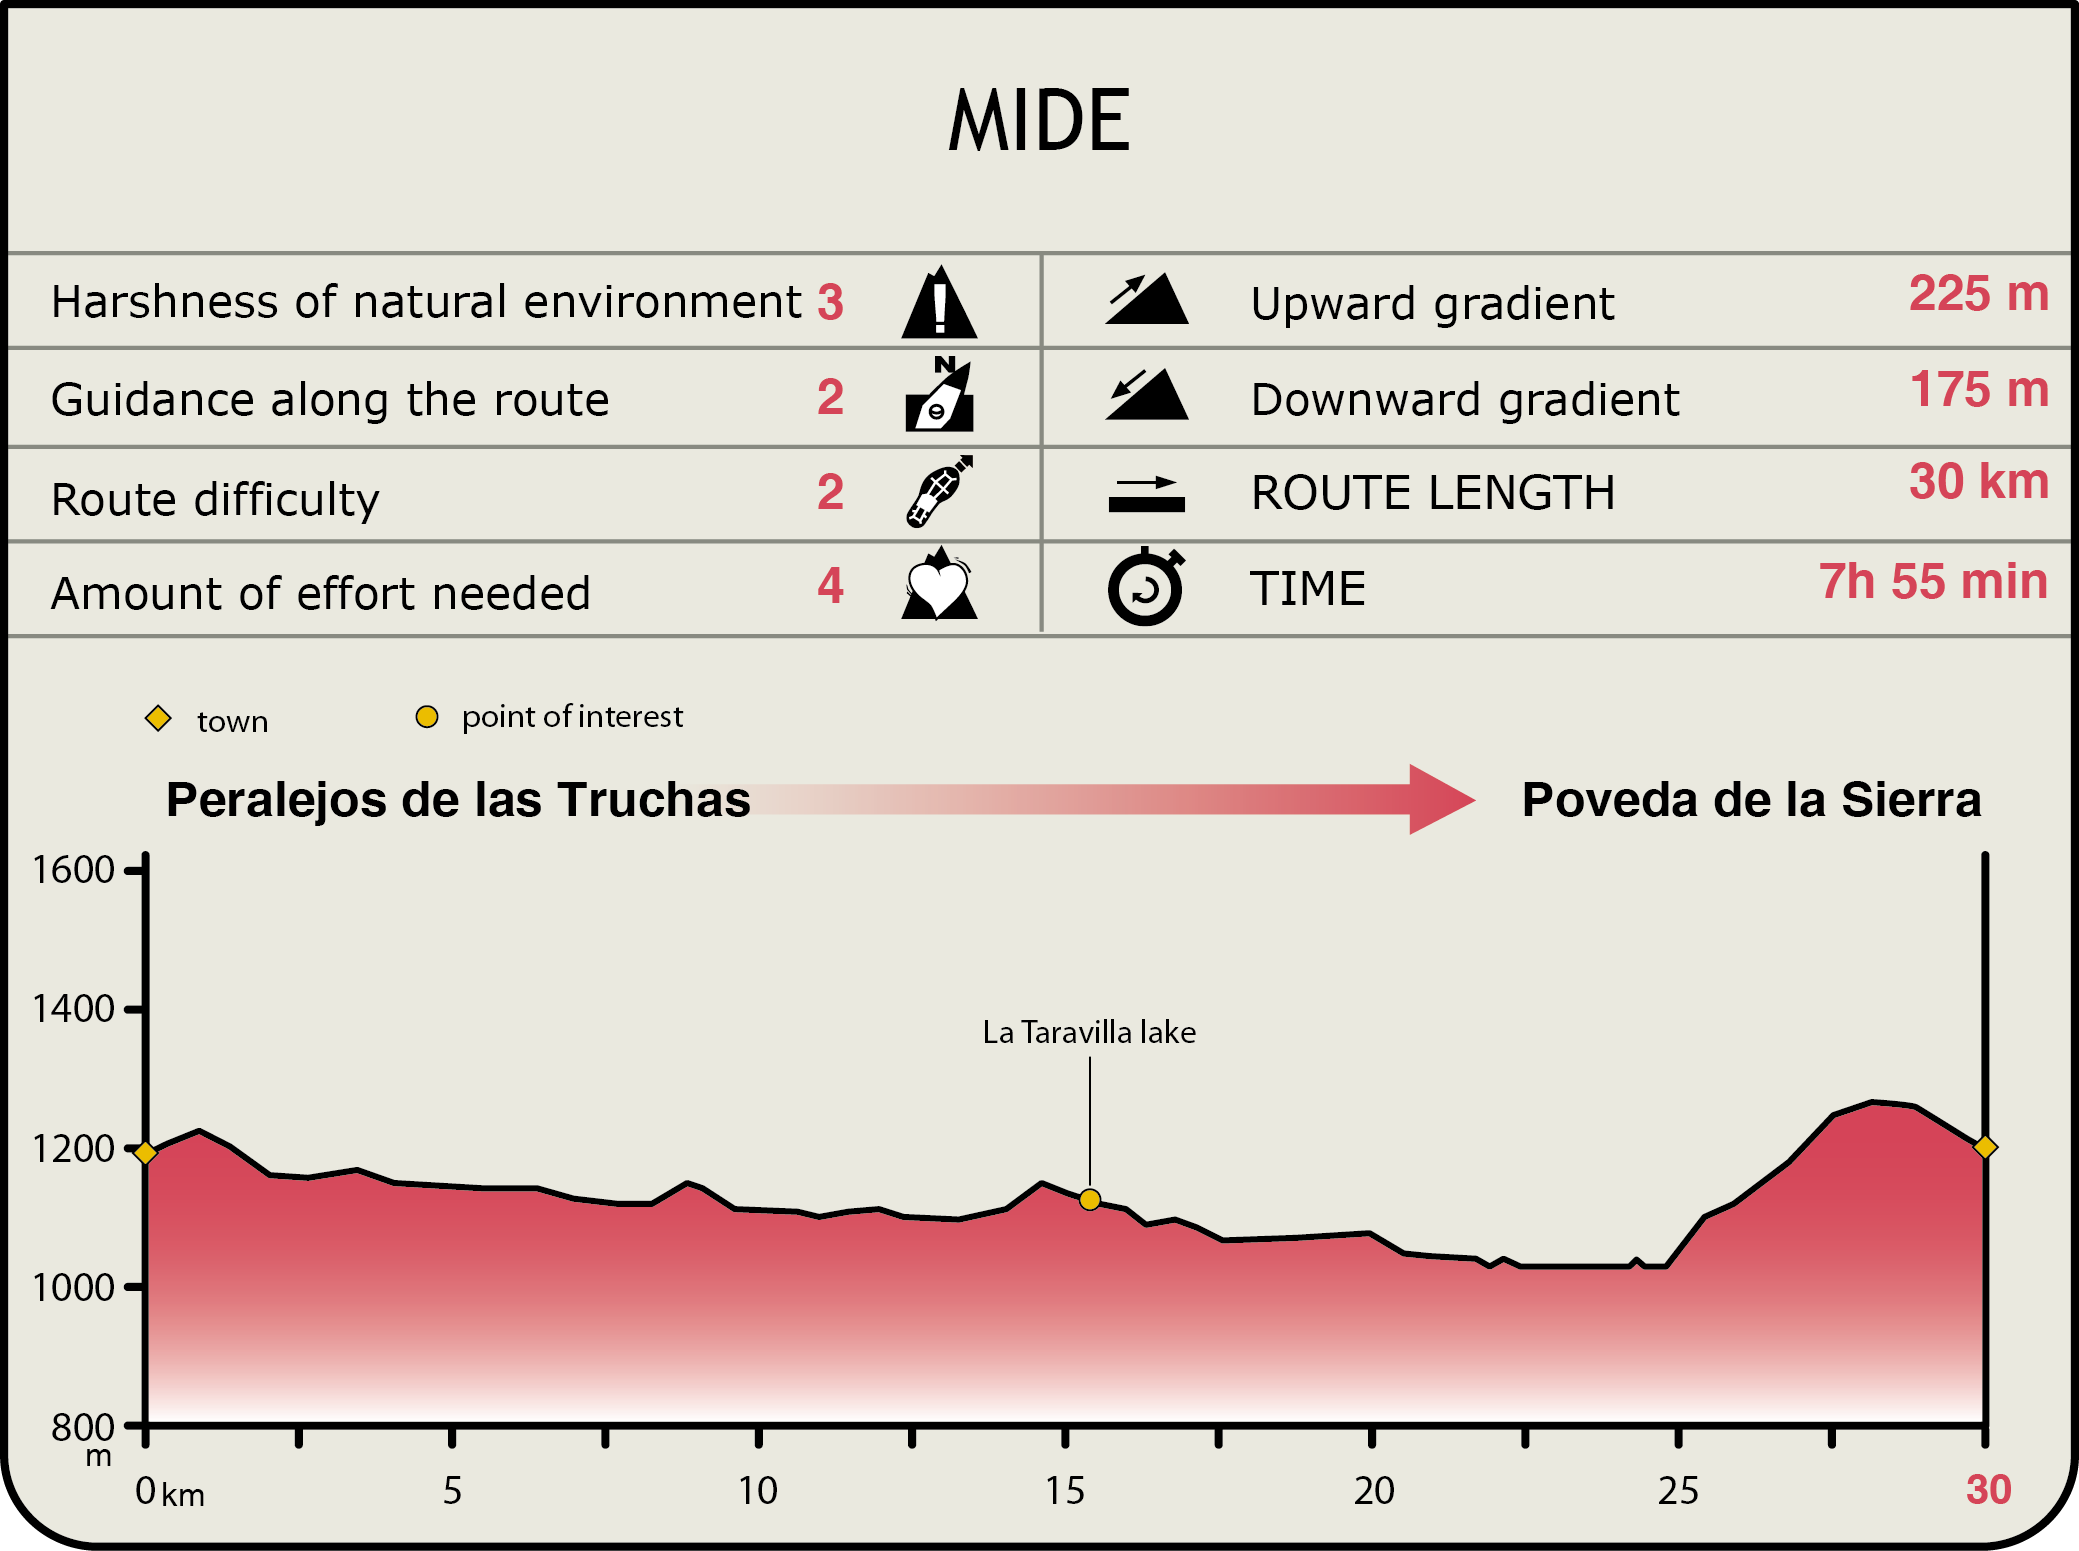 Perfil MIDE de la Etapa Peralejos de las Truchas-Poveda de la Sierra